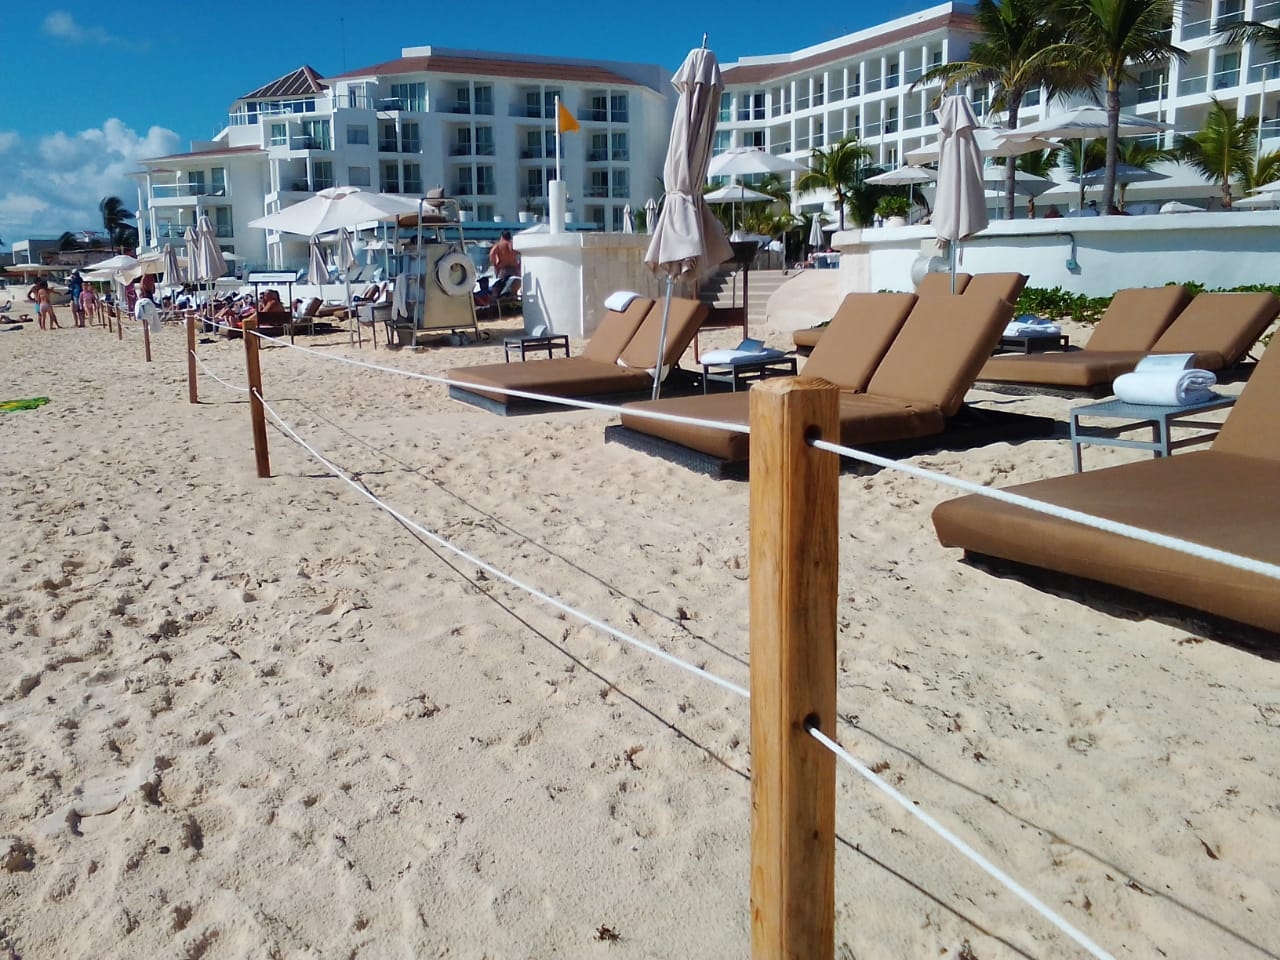 La Ley de Bienes Nacionales obliga a los hoteles a respetar ciertos metros de playa frente a sus edificios, y permitir el libre acceso de personas